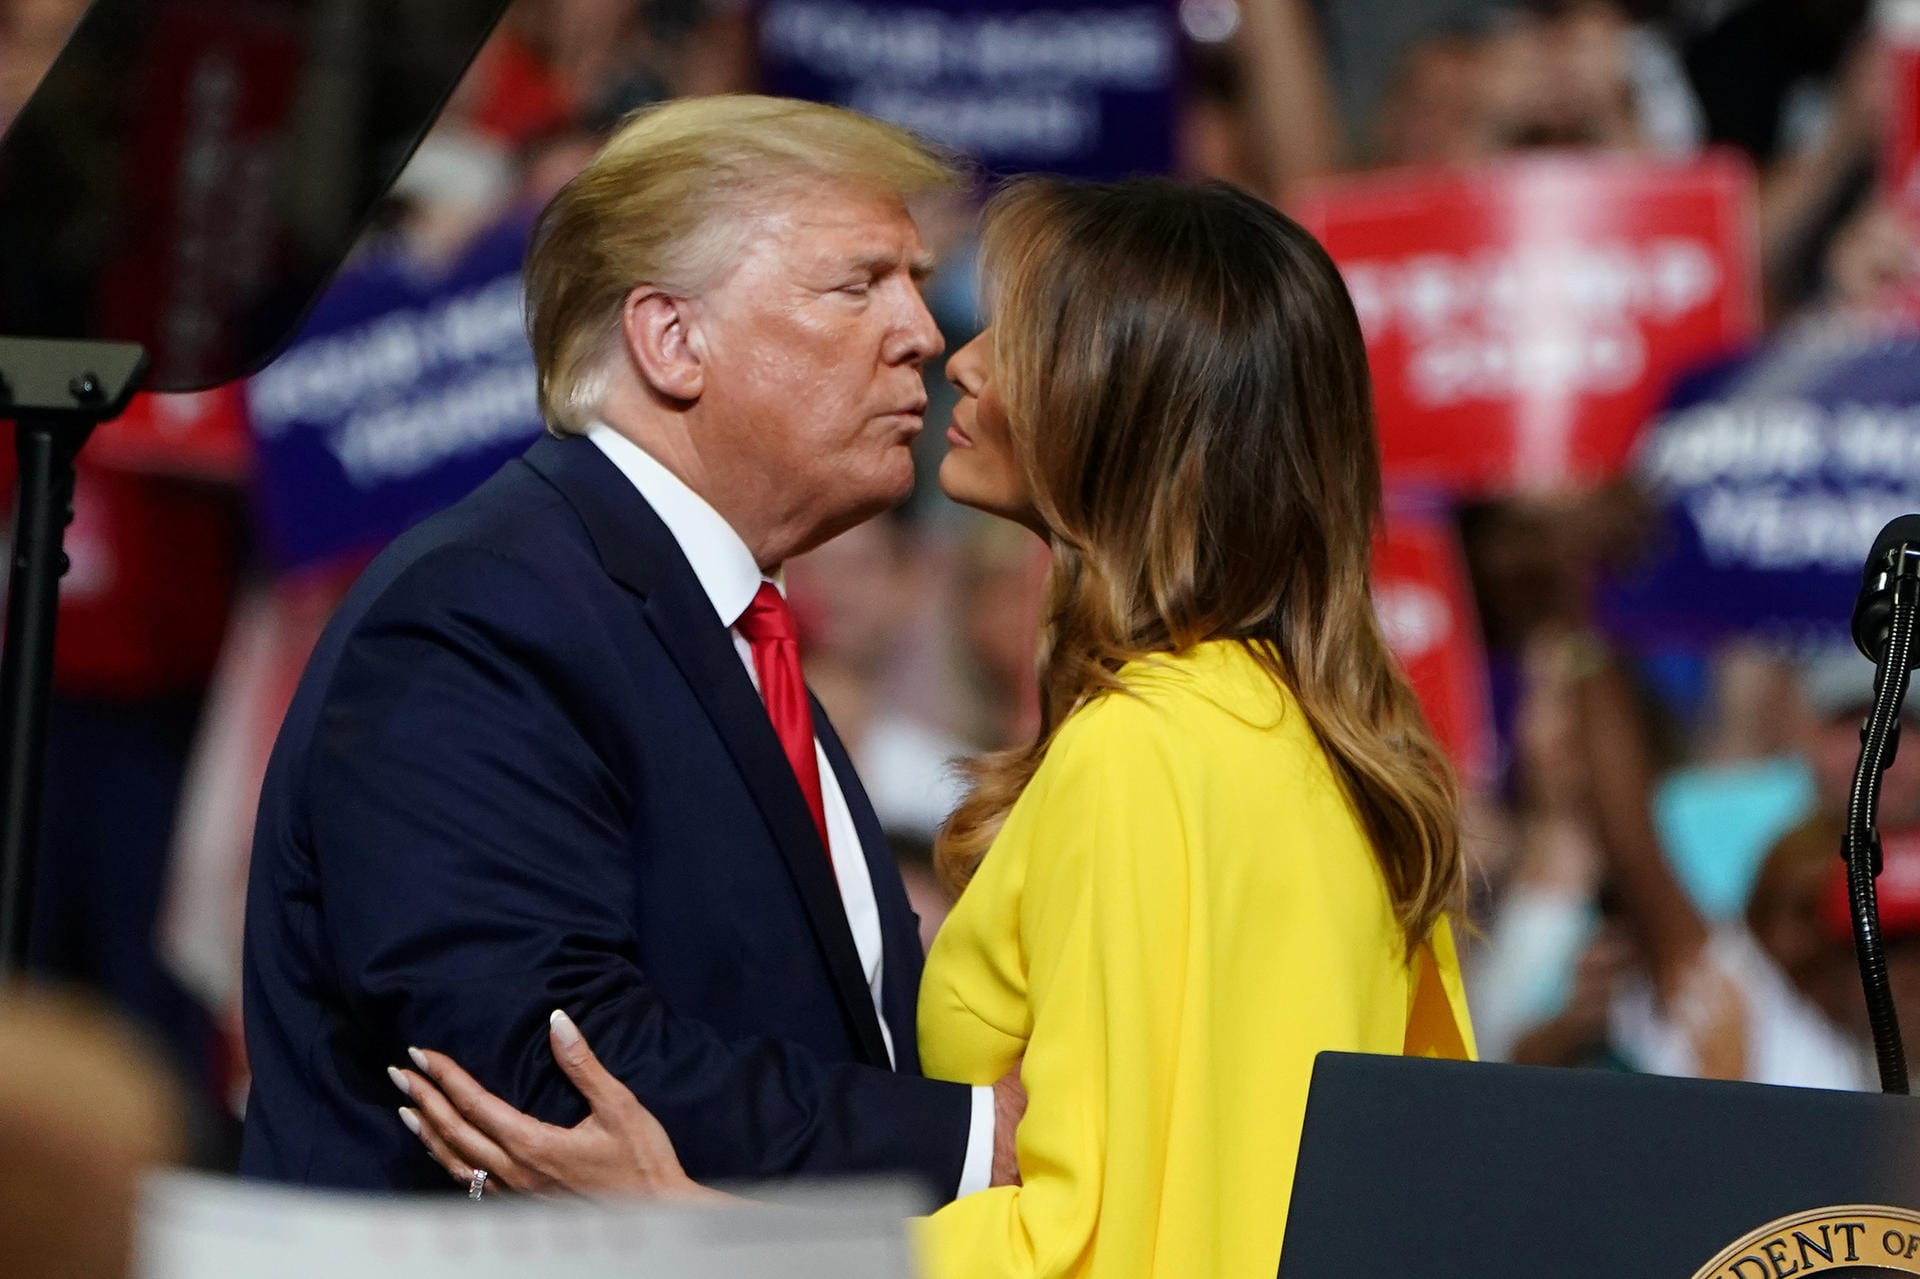 Trump küsst seine Ehefrau, die First Lady Melania Trump.